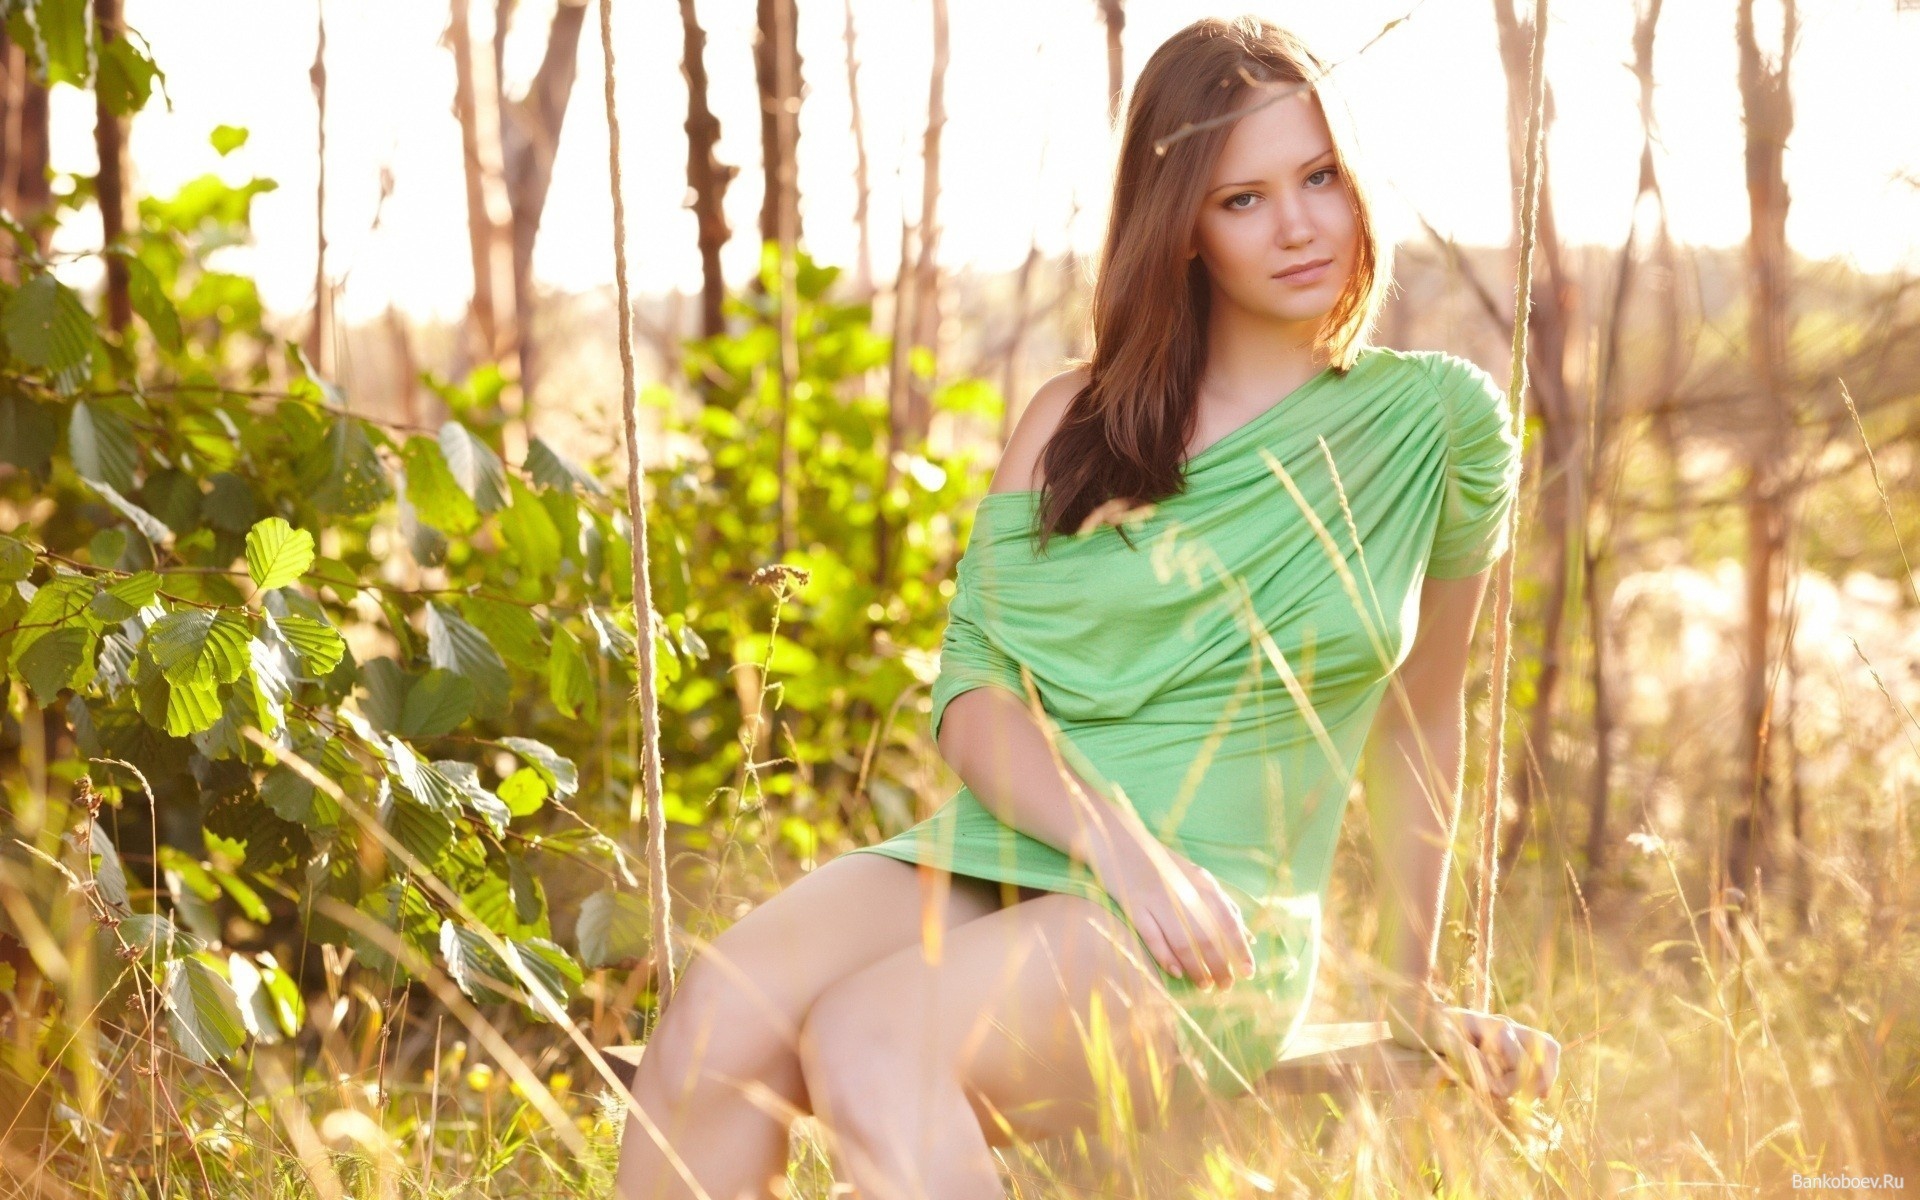 Фото девушки с красивой пиздой в зелёном лесу